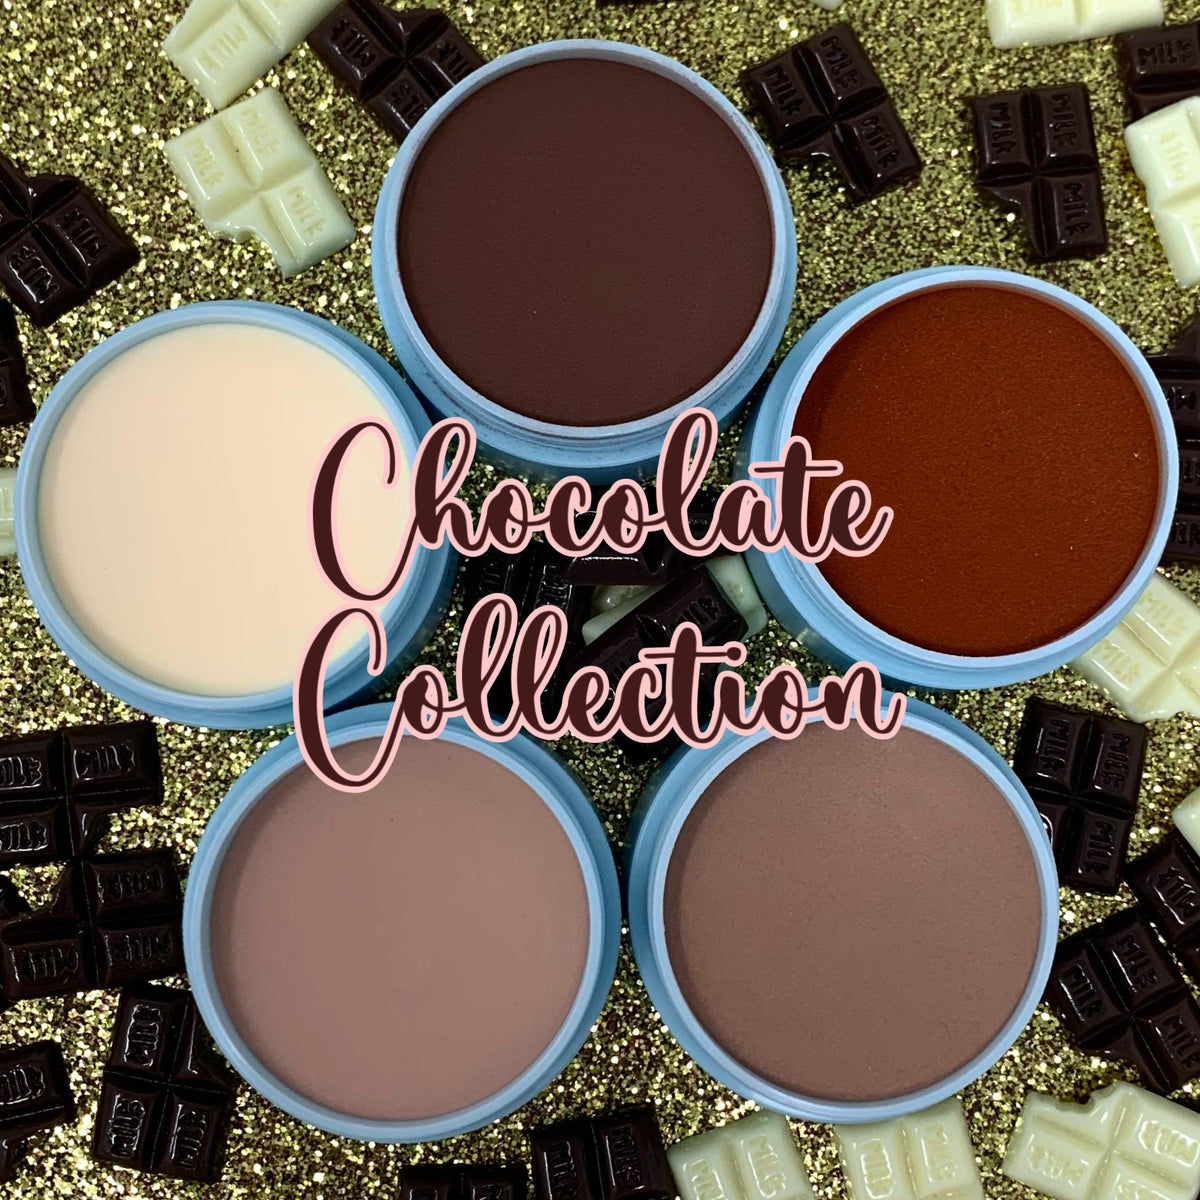 🍫 – - Chocolate Collection Anacrylics Bundle